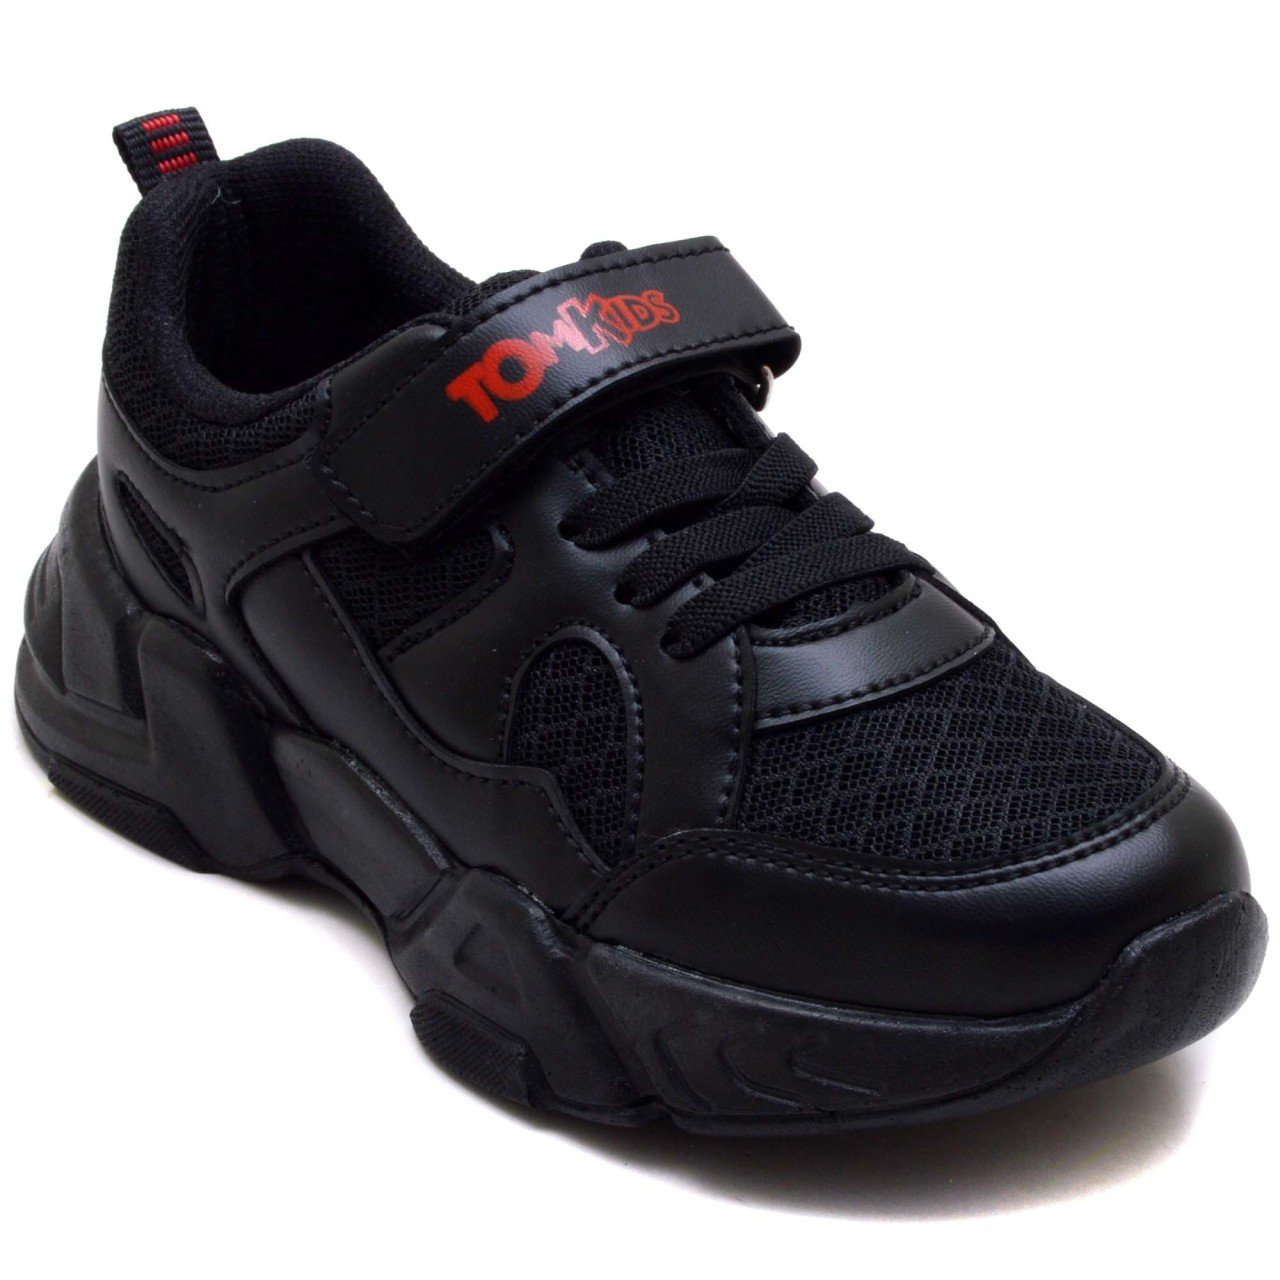 TOMKIDS-9 Filet Spor Ayakkabı - Siyah